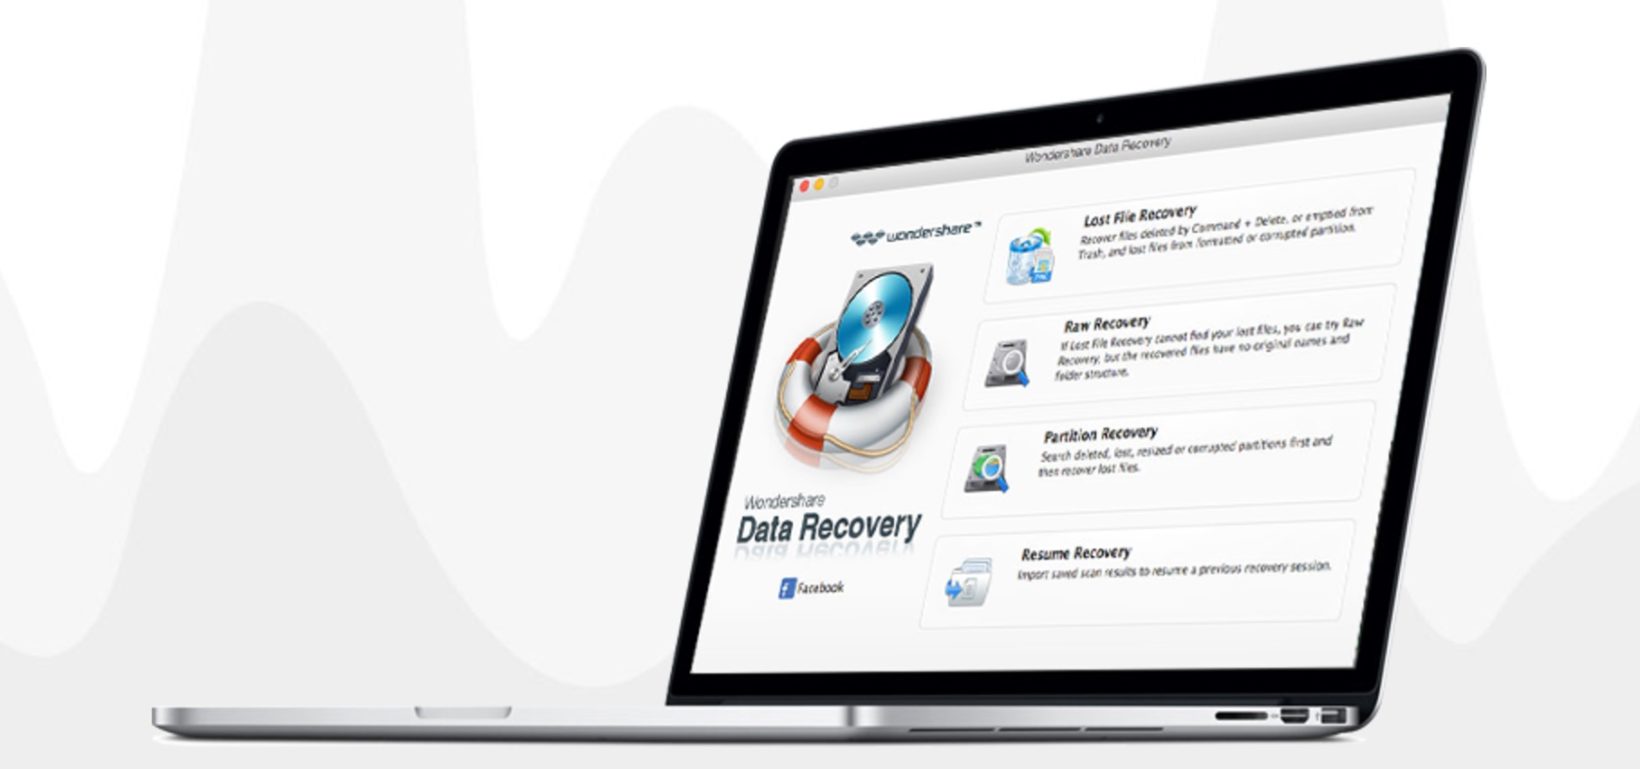 Wondershare Data Recovery per Mac